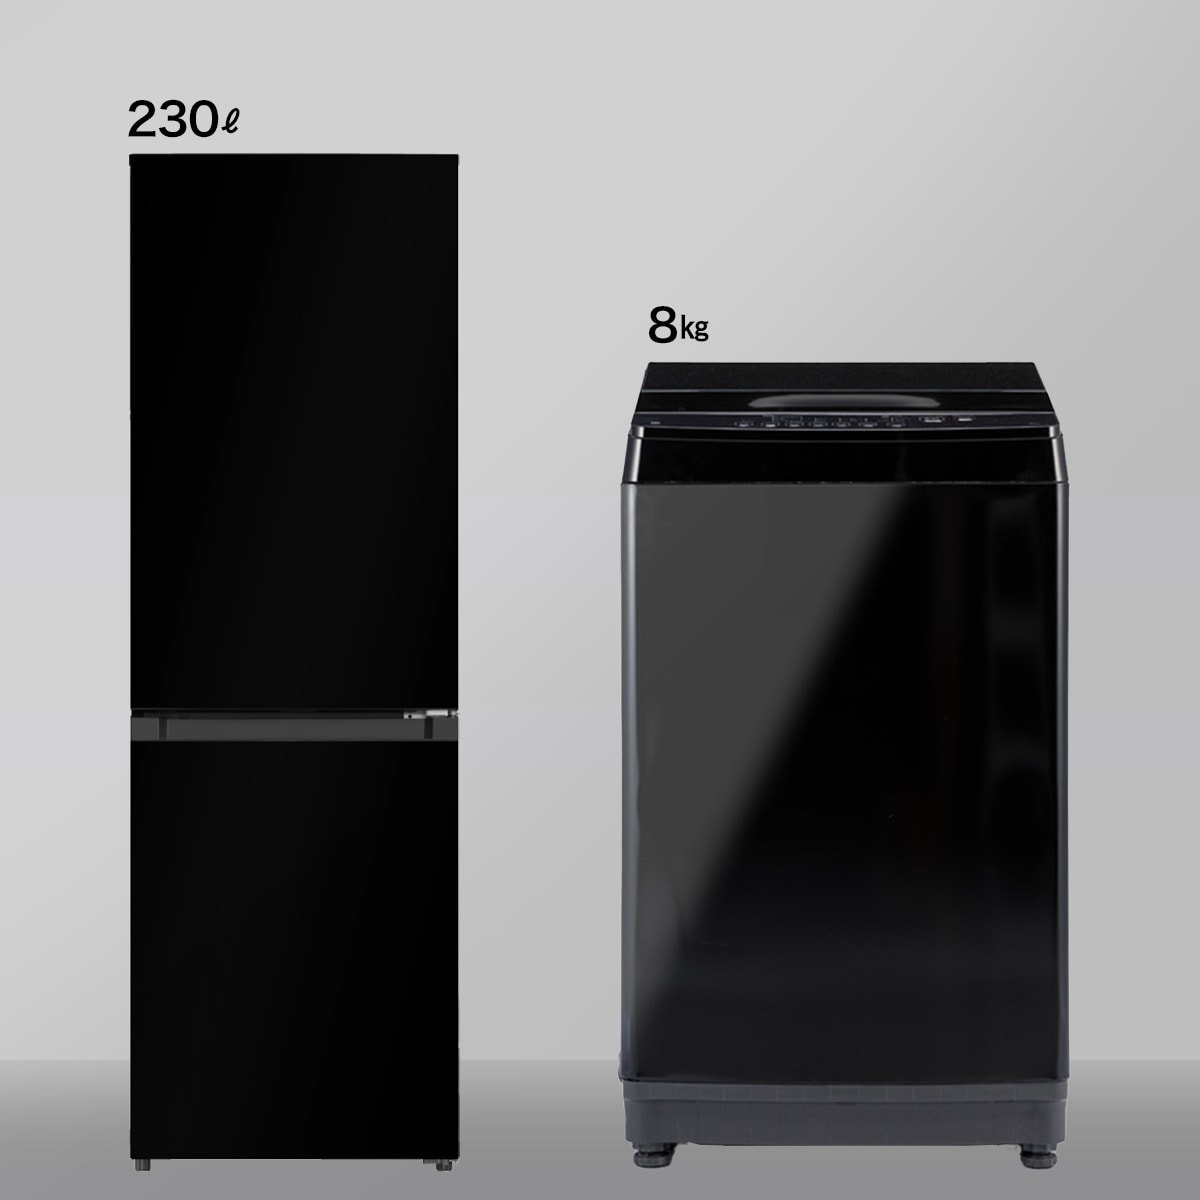 【家電2点セット】230L冷蔵庫＋8㎏洗濯機セット(ブラック)